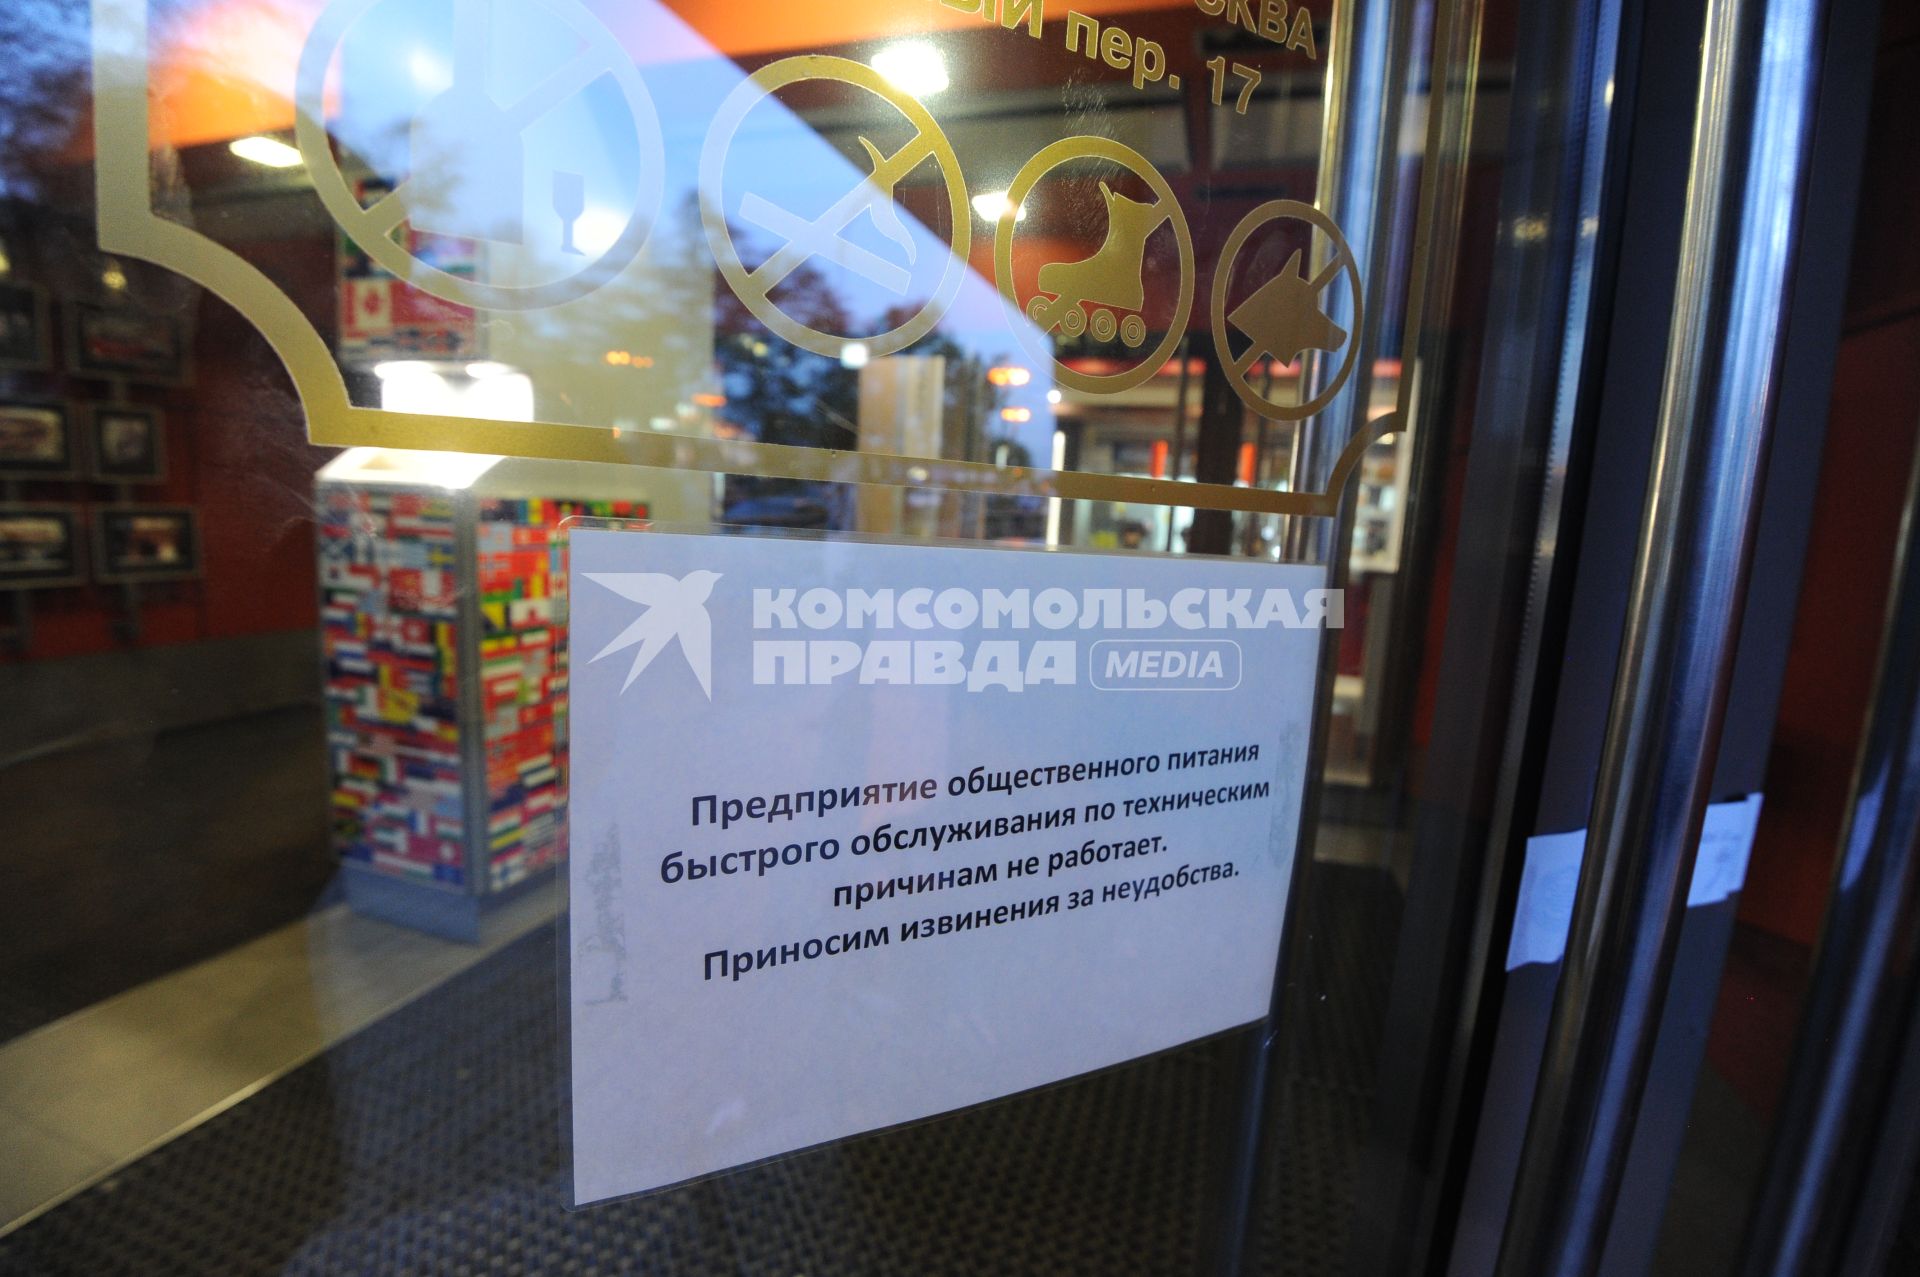 Ресторан `Макдоналдс` на улице Большая Бронная д. 29 (на углу Пушкинской площади) закрытый в среду в ходе проверки Роспотребнадзором.